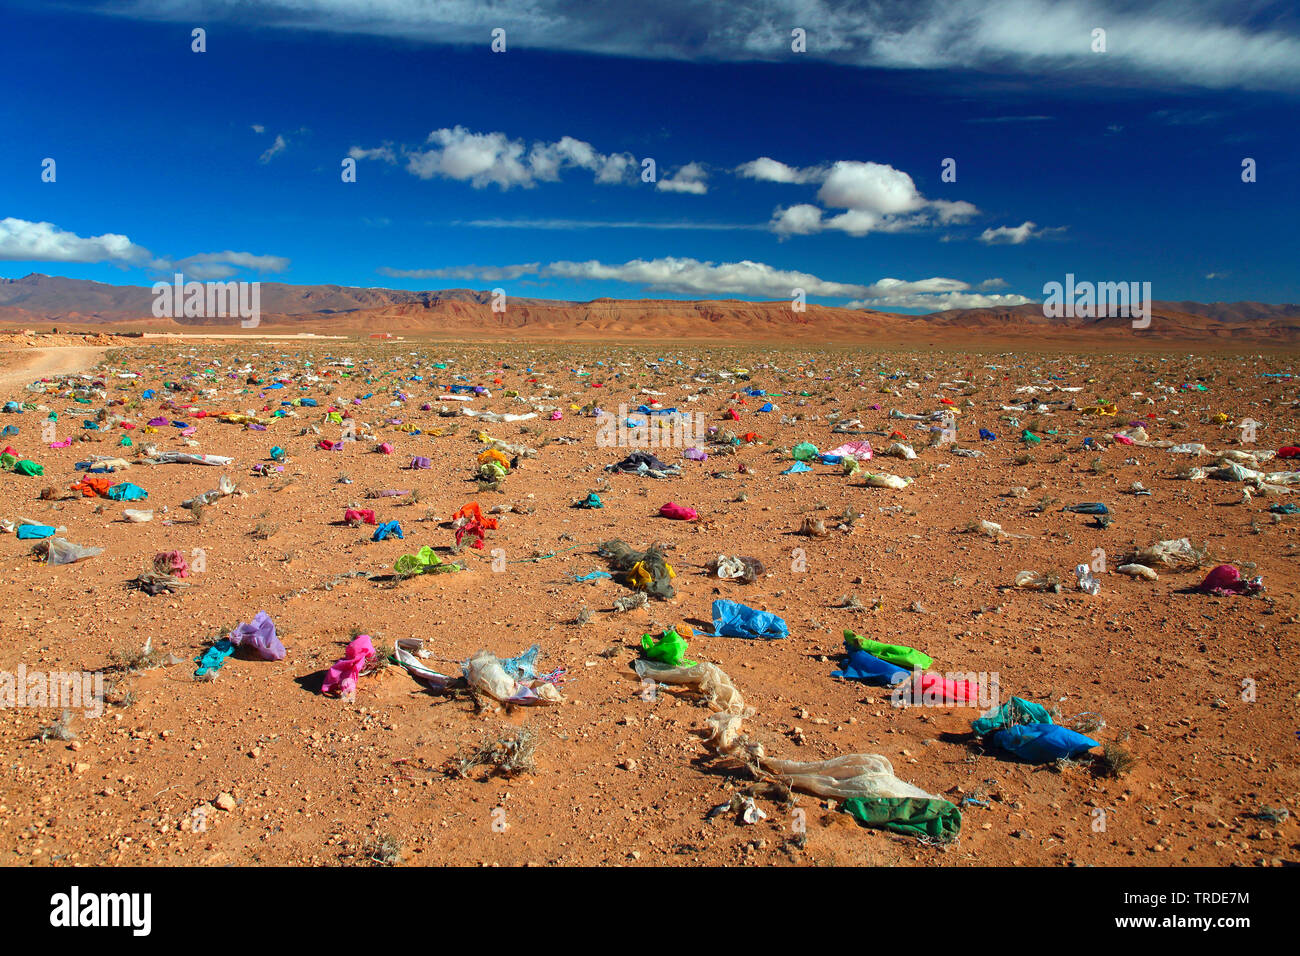 Les déchets en plastique soufflé par le vent sur un plateau, le Maroc, BOUMALNE DADES Banque D'Images